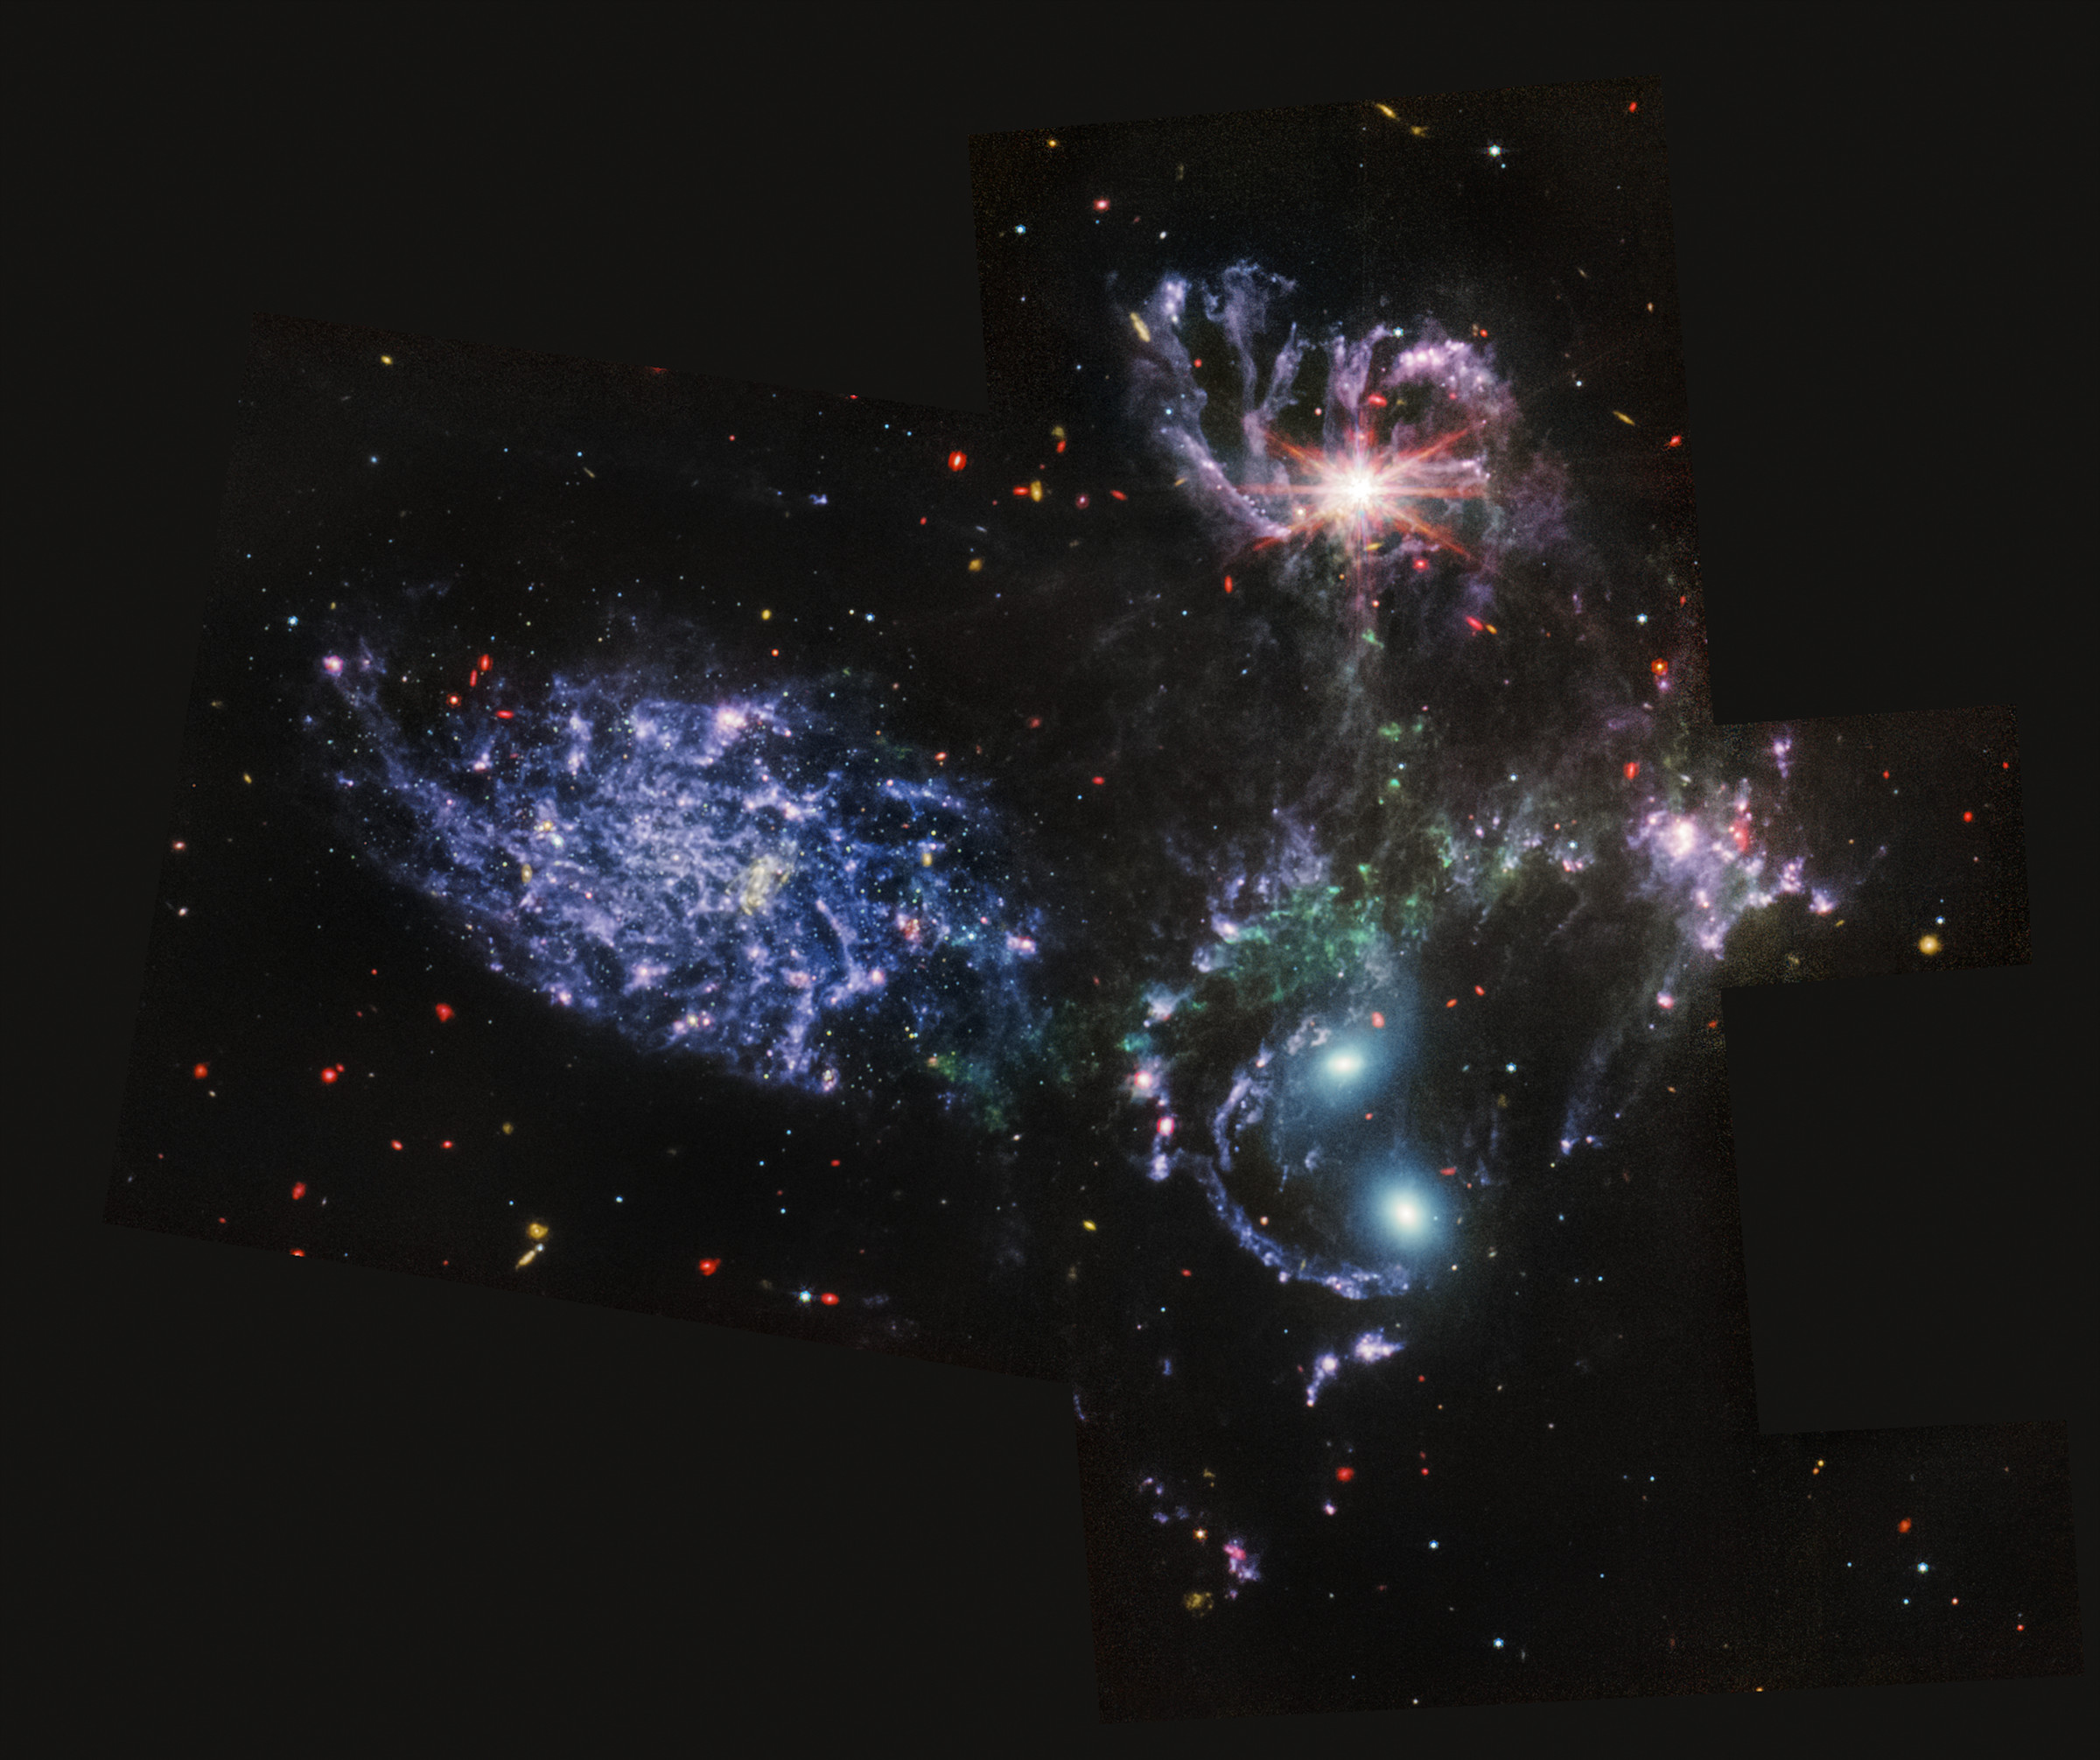 Stephan’s Quintet as seen by JWST’s MIRI.